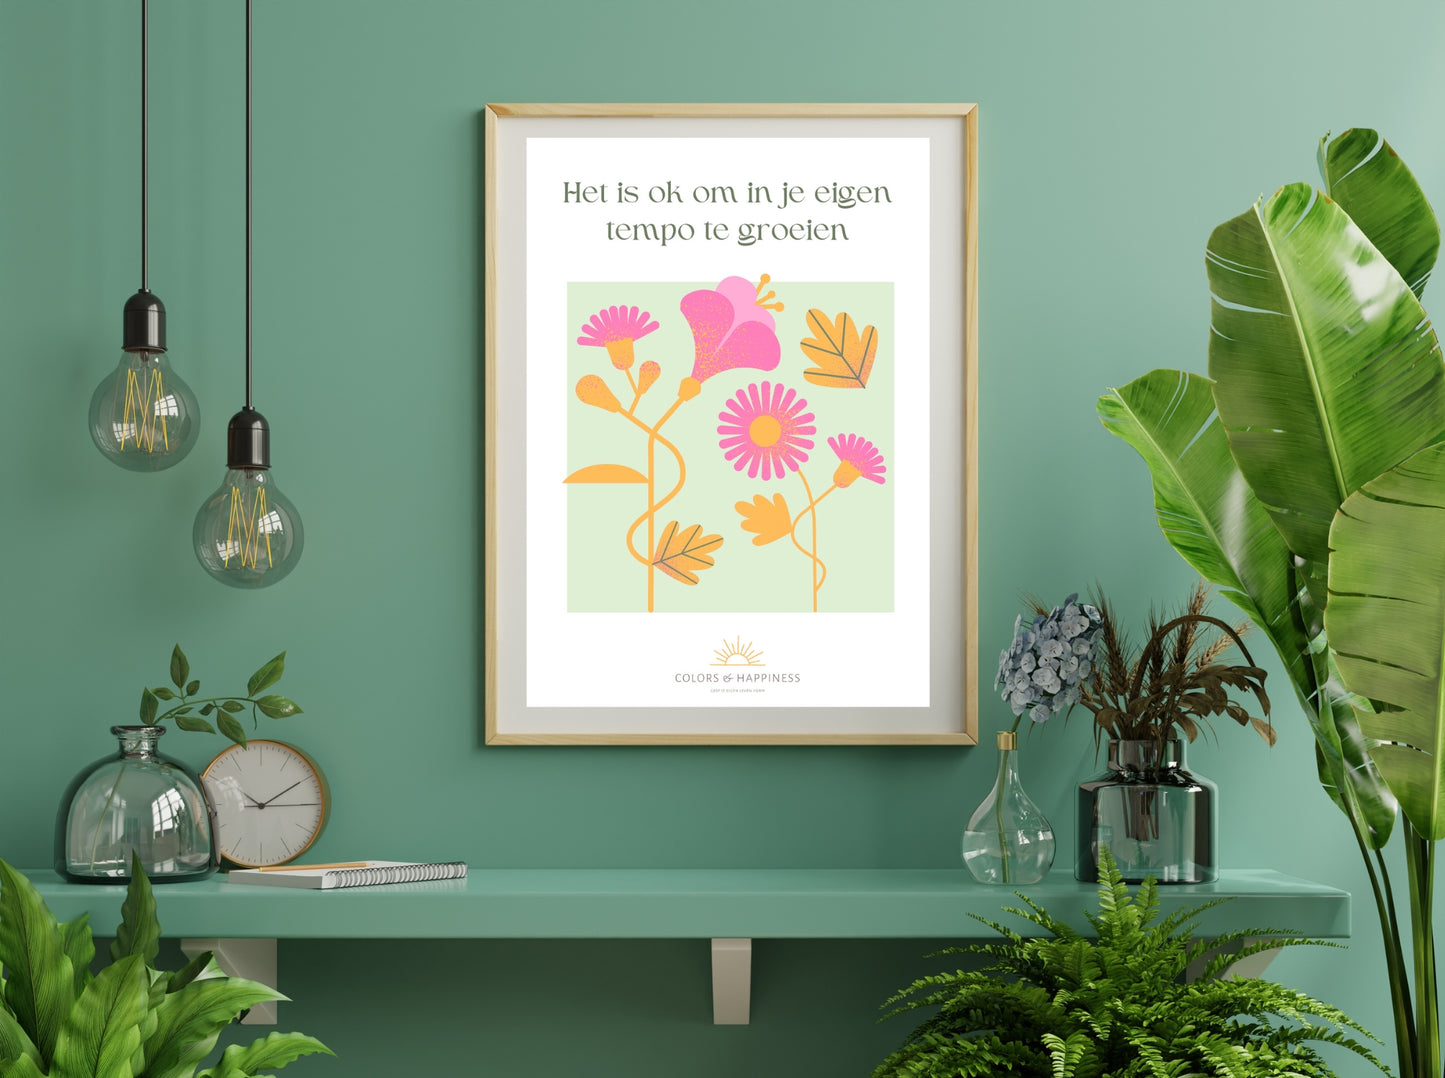 Inspirerende poster met quote "Het is ok..." en bloemen illustratie, digitale download voor een bewuster leven